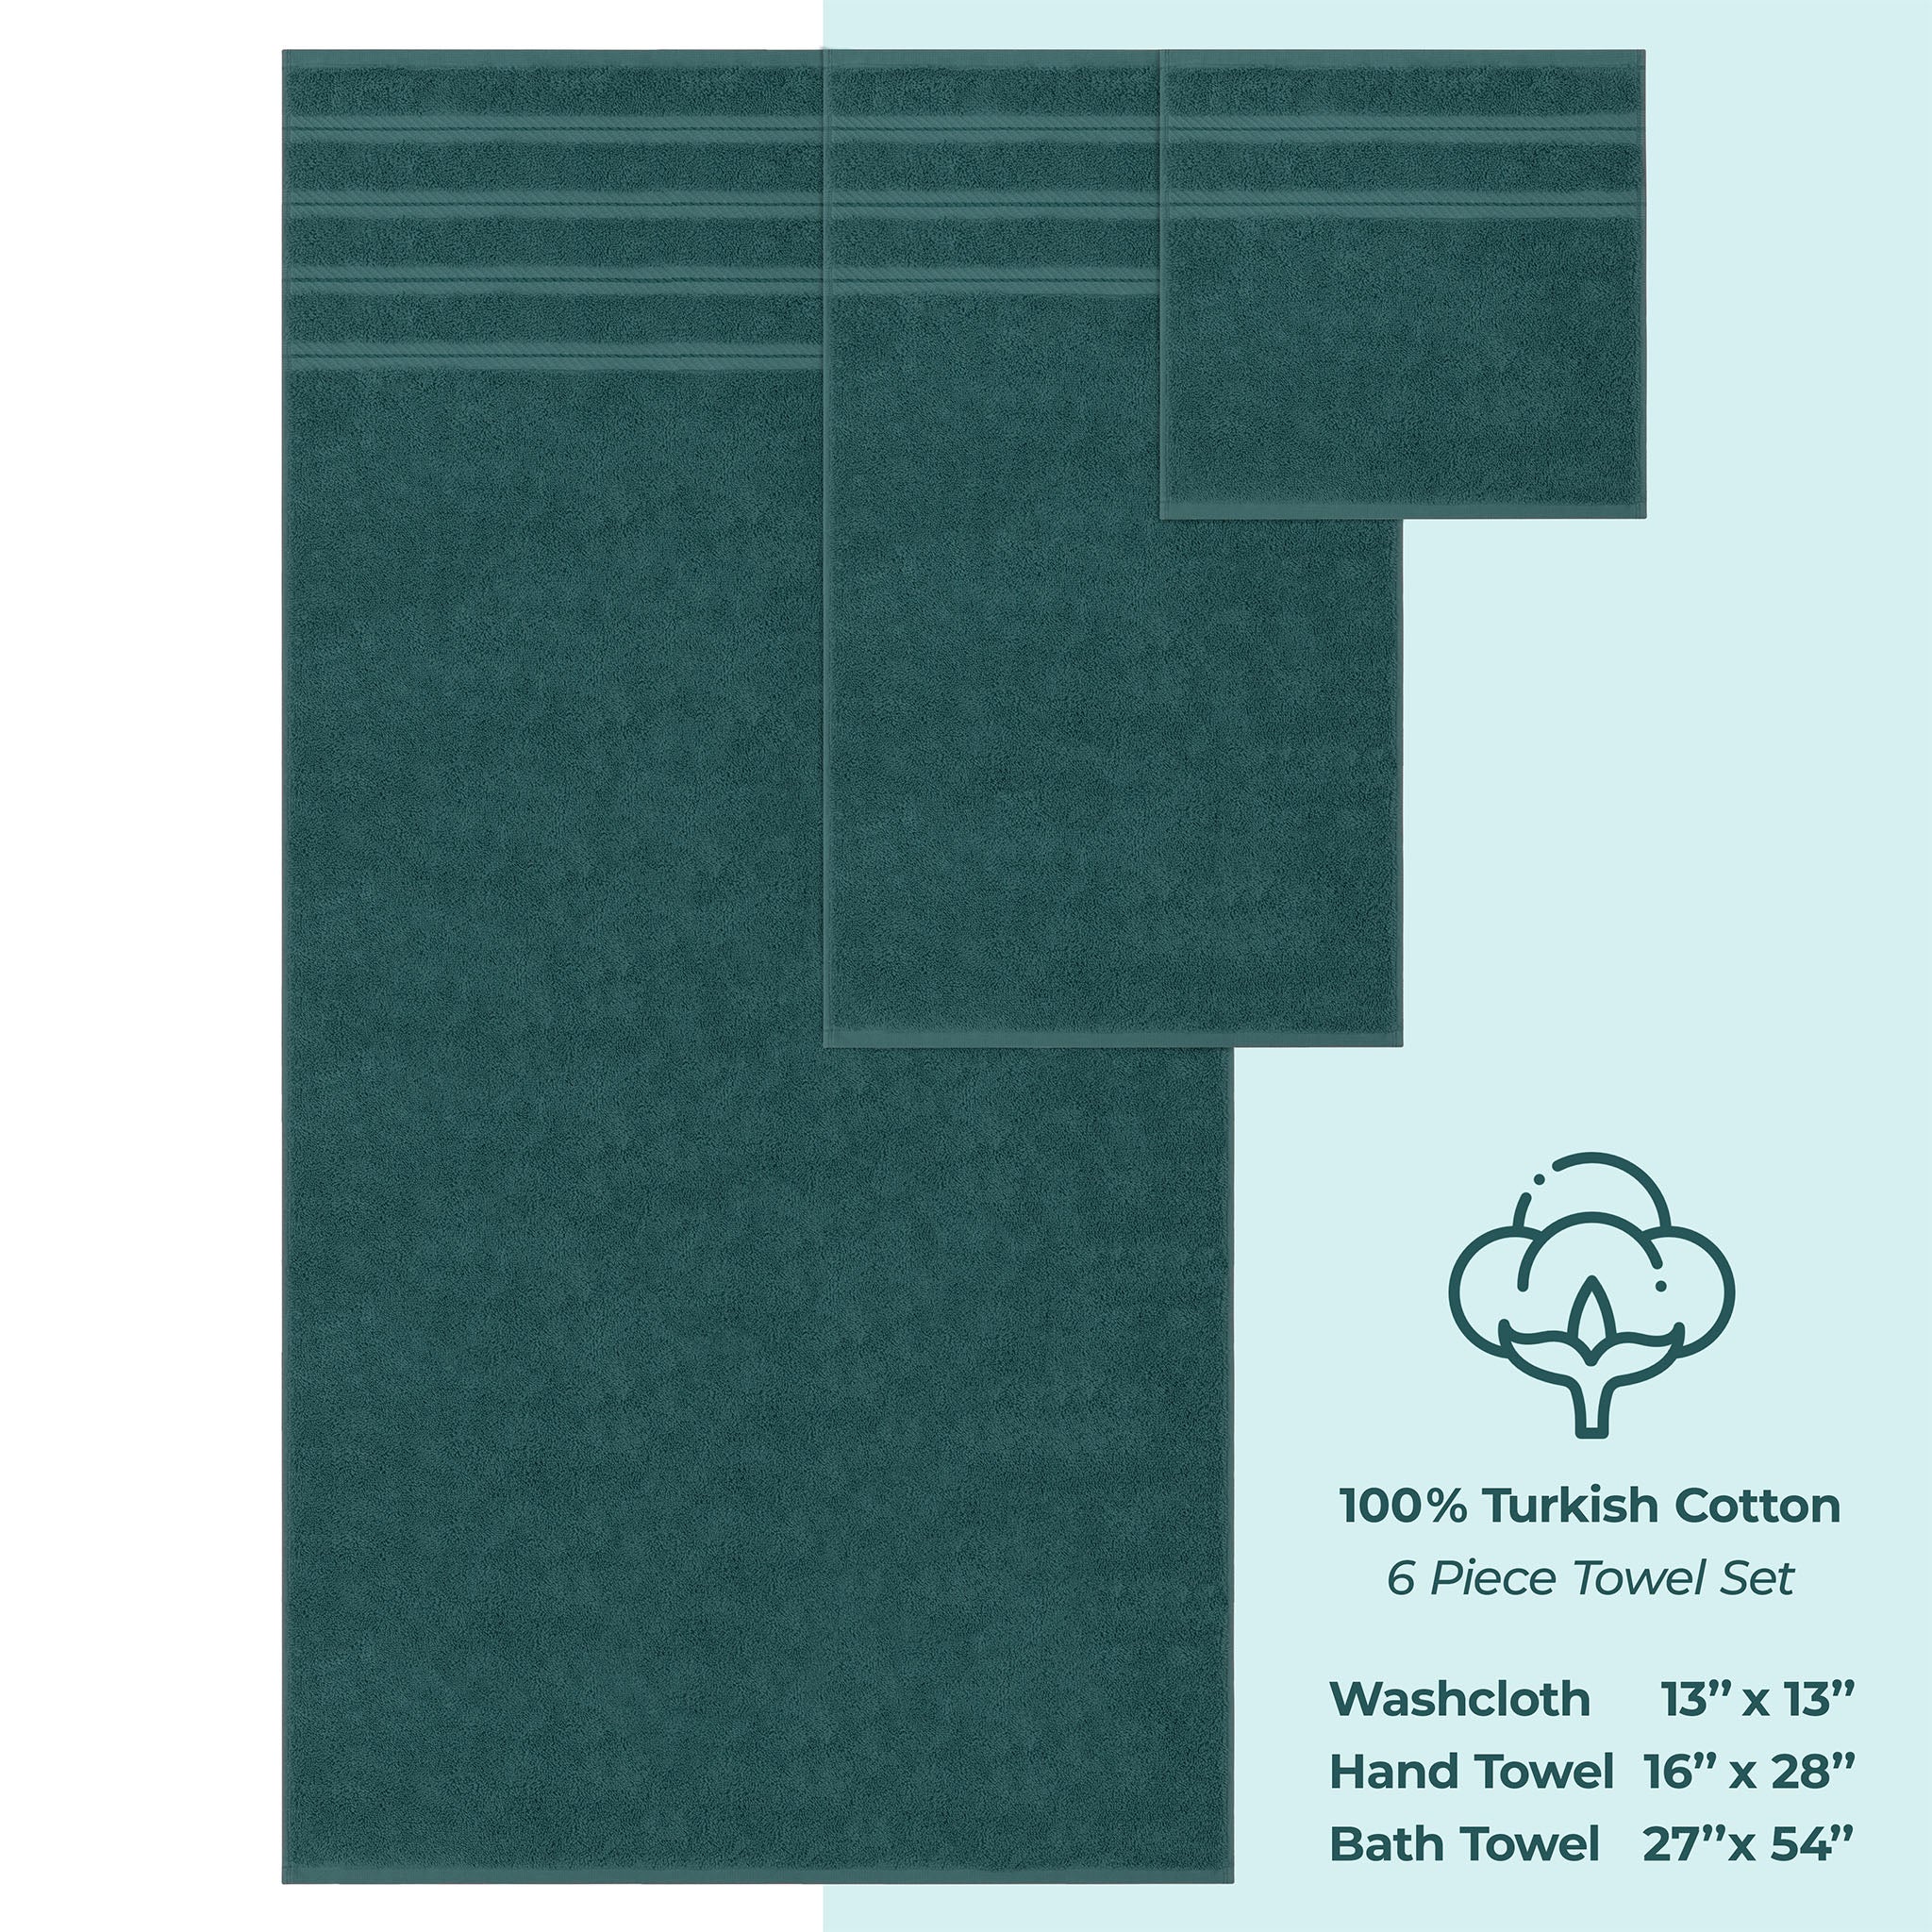 American Soft Linen 100% Turkish Cotton 6 Piece Towel Set Wholesale colonial-blue-4